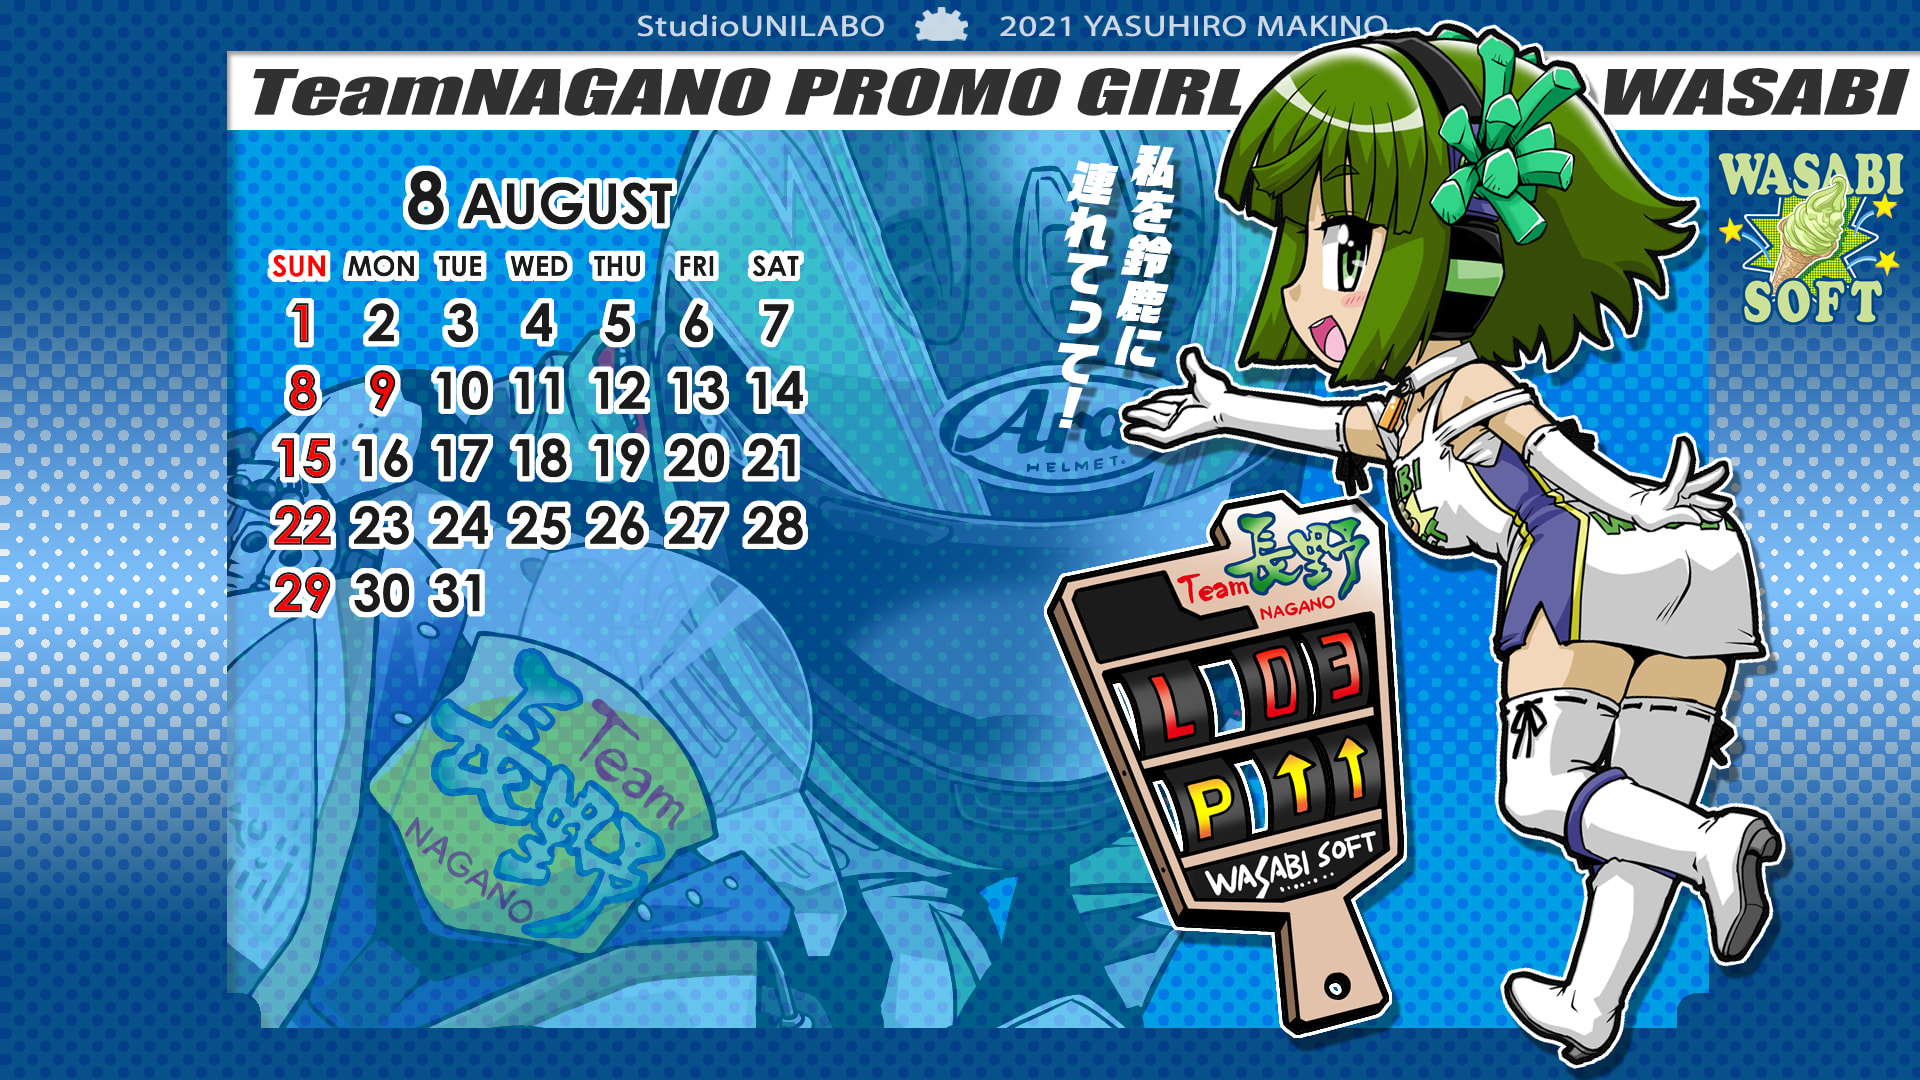 ２０２１年８月の壁紙カレンダー配布 Free Studio Unilaboの Manga配信行為